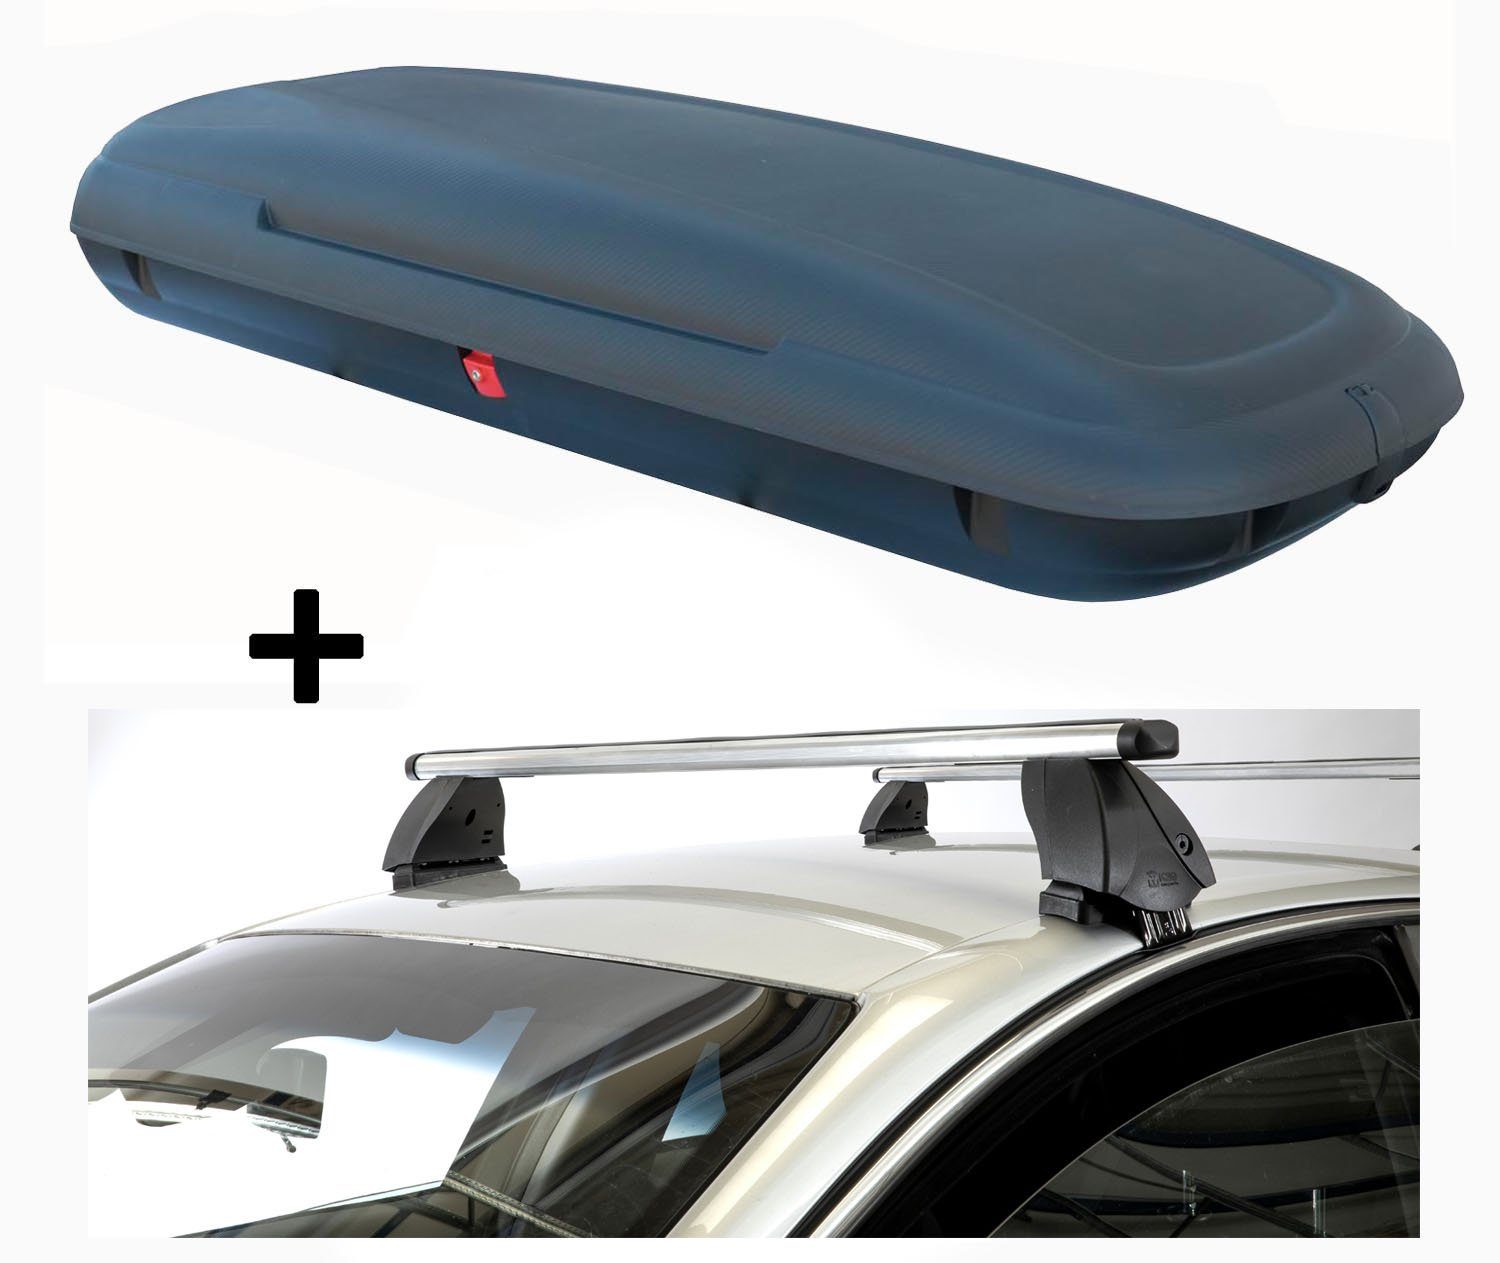 VDP Dachbox, (Für Ihren Subaru Pleo (5Türer) ab 07, Dachbox und Dachträger im Set), Dachbox VDPCA480 480 Liter carbonlook + Dachträger K1 PRO Aluminium kompatibel mit Subaru Pleo (5Türer) ab 07